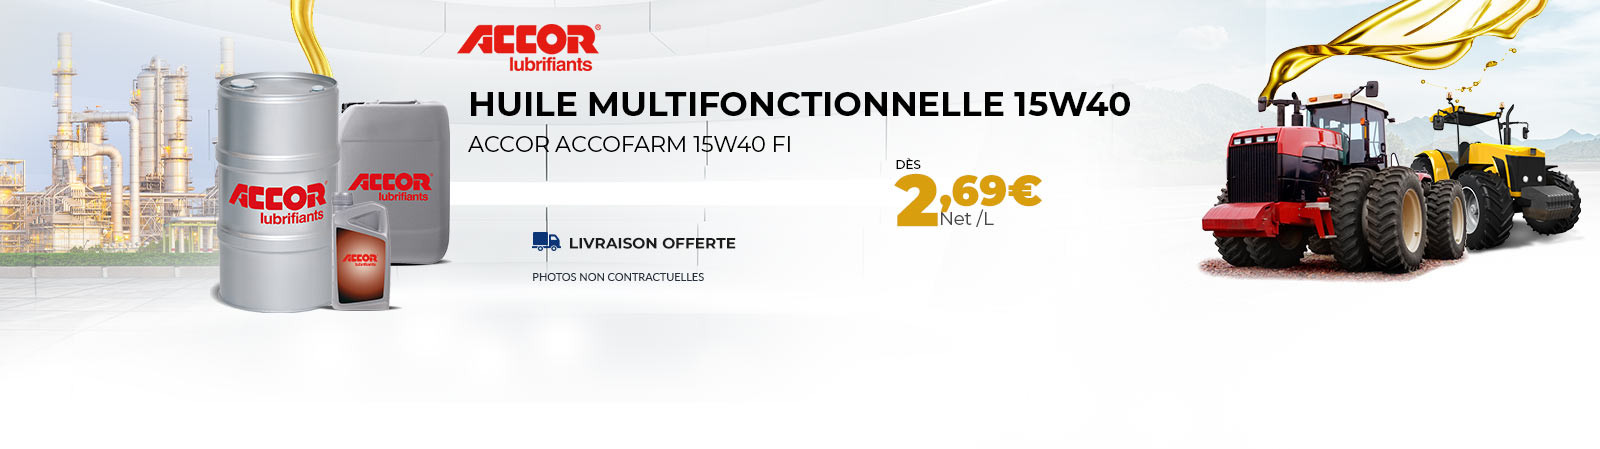 Huile Multifonctionnelle 15w40 dès 2.69 €/l PORT OFFERT